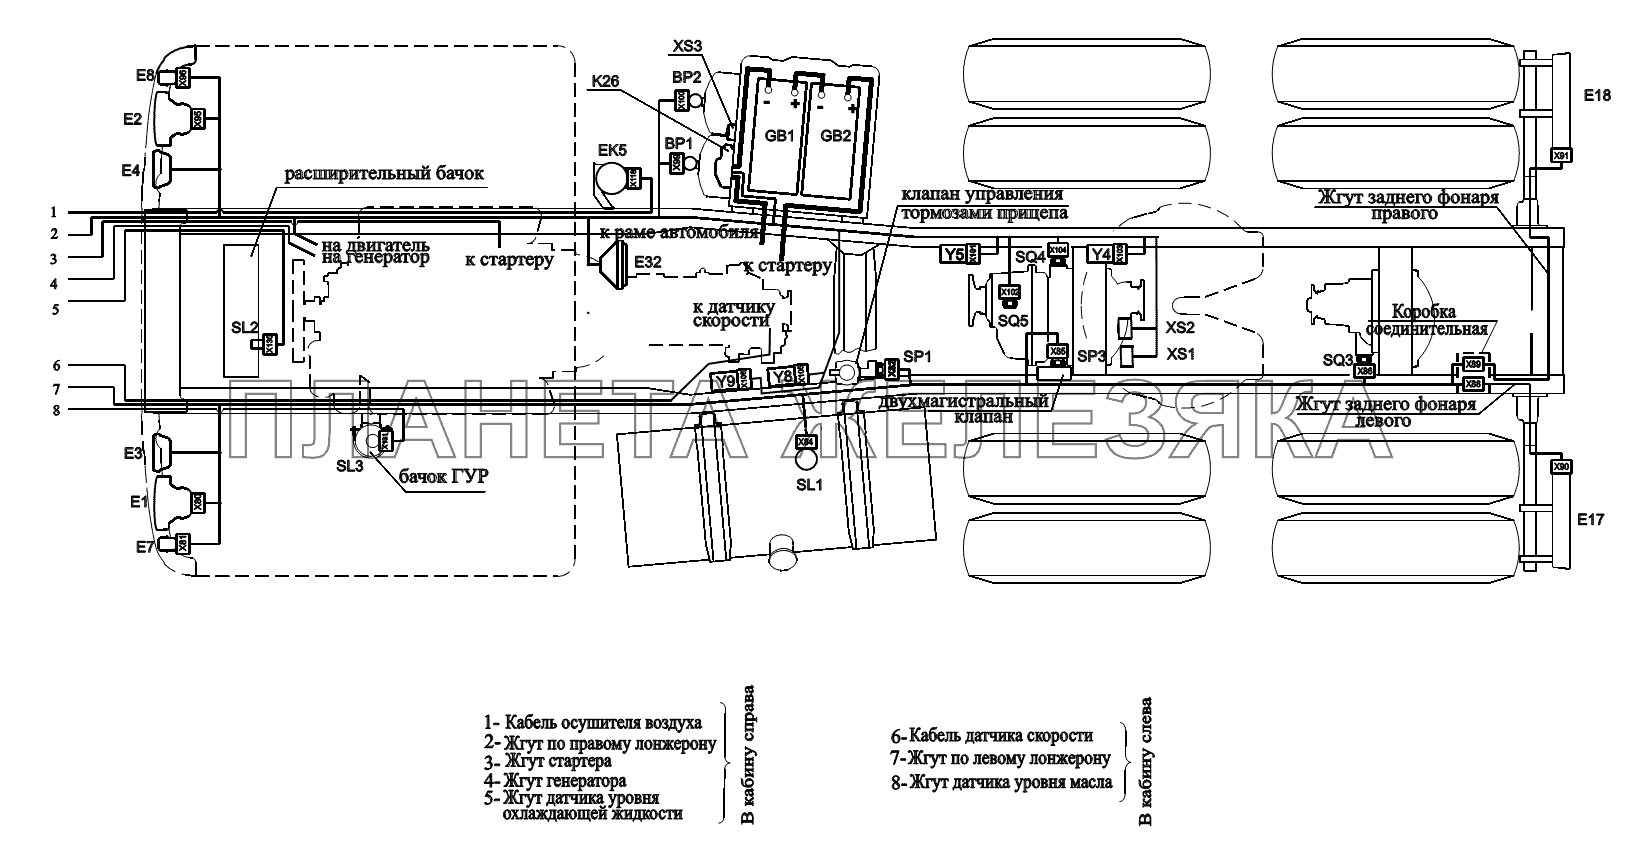 Расположение разъемов и элементов электрооборудования на шасси автомобилей (с гидроотбором) МАЗ-6422, 5432